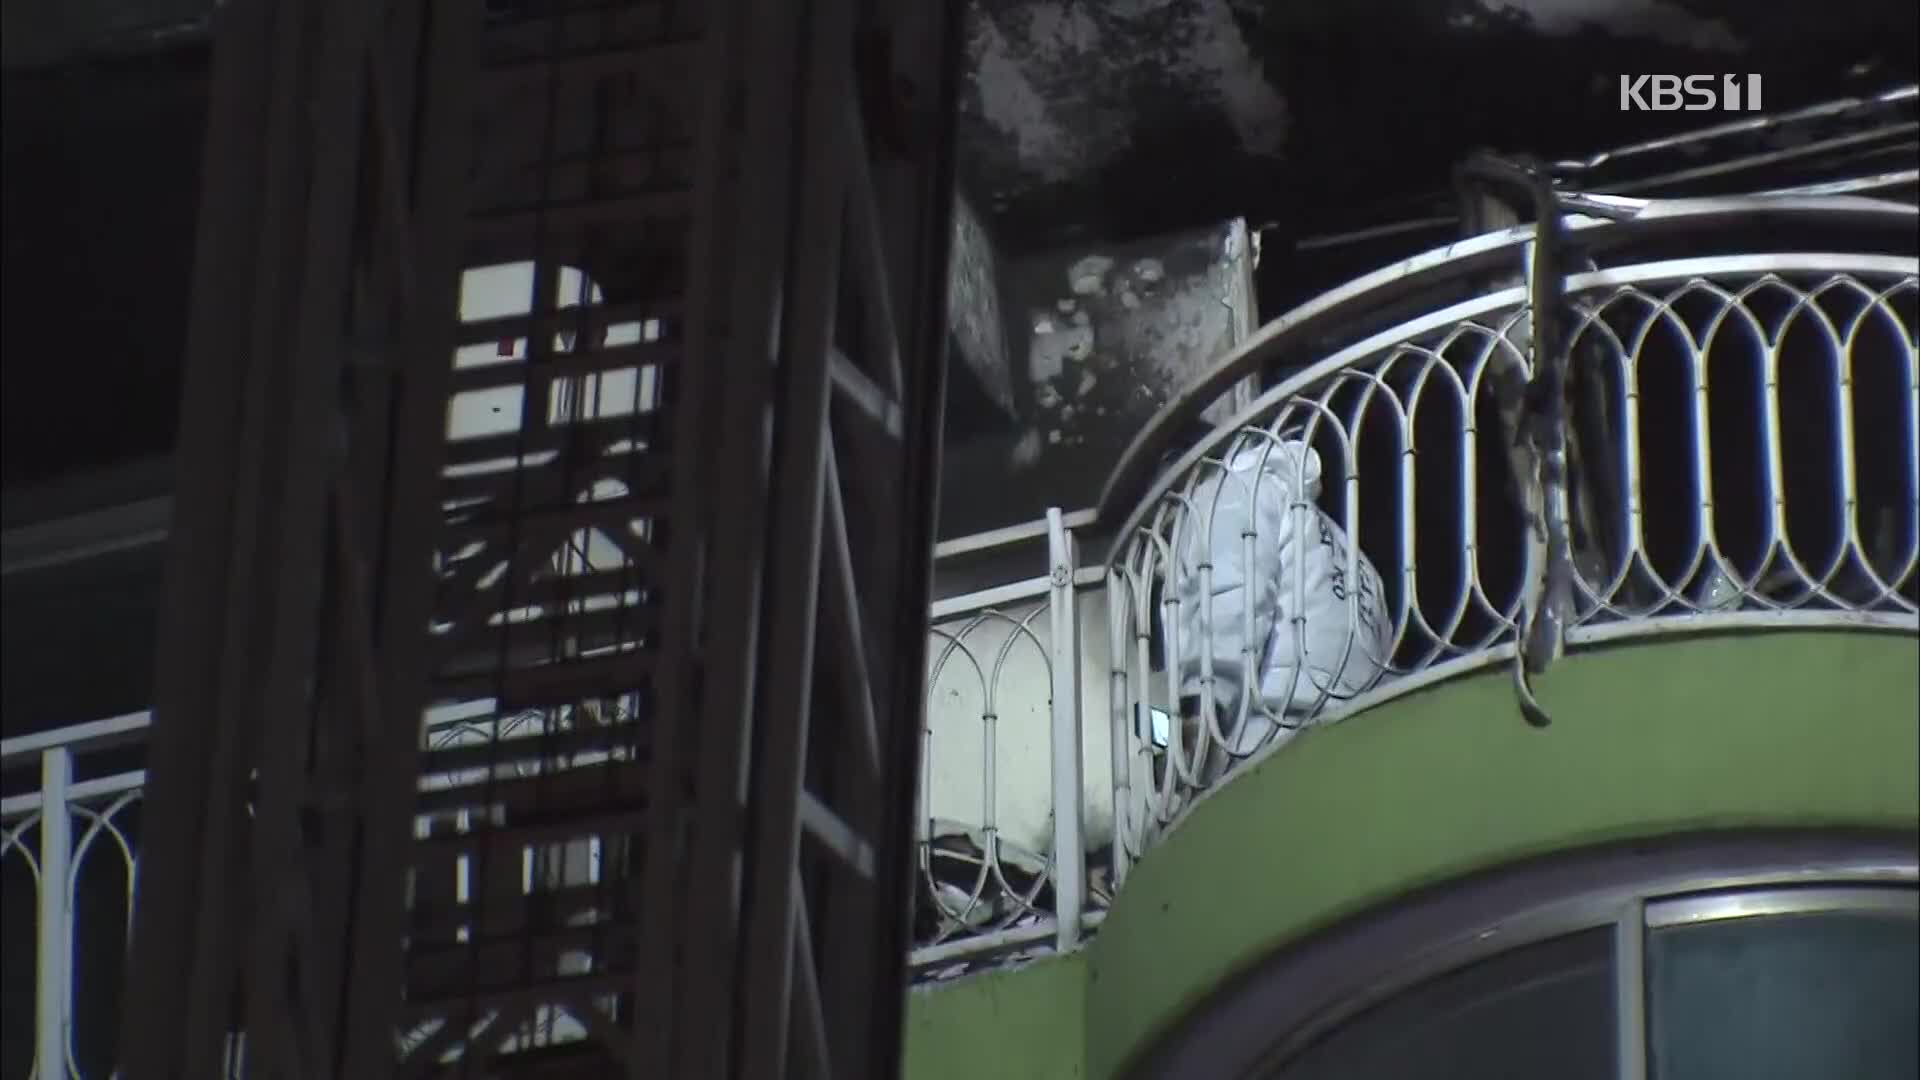 군포 아파트 불로 4명 사망·7명 부상…“폭발음 들려”